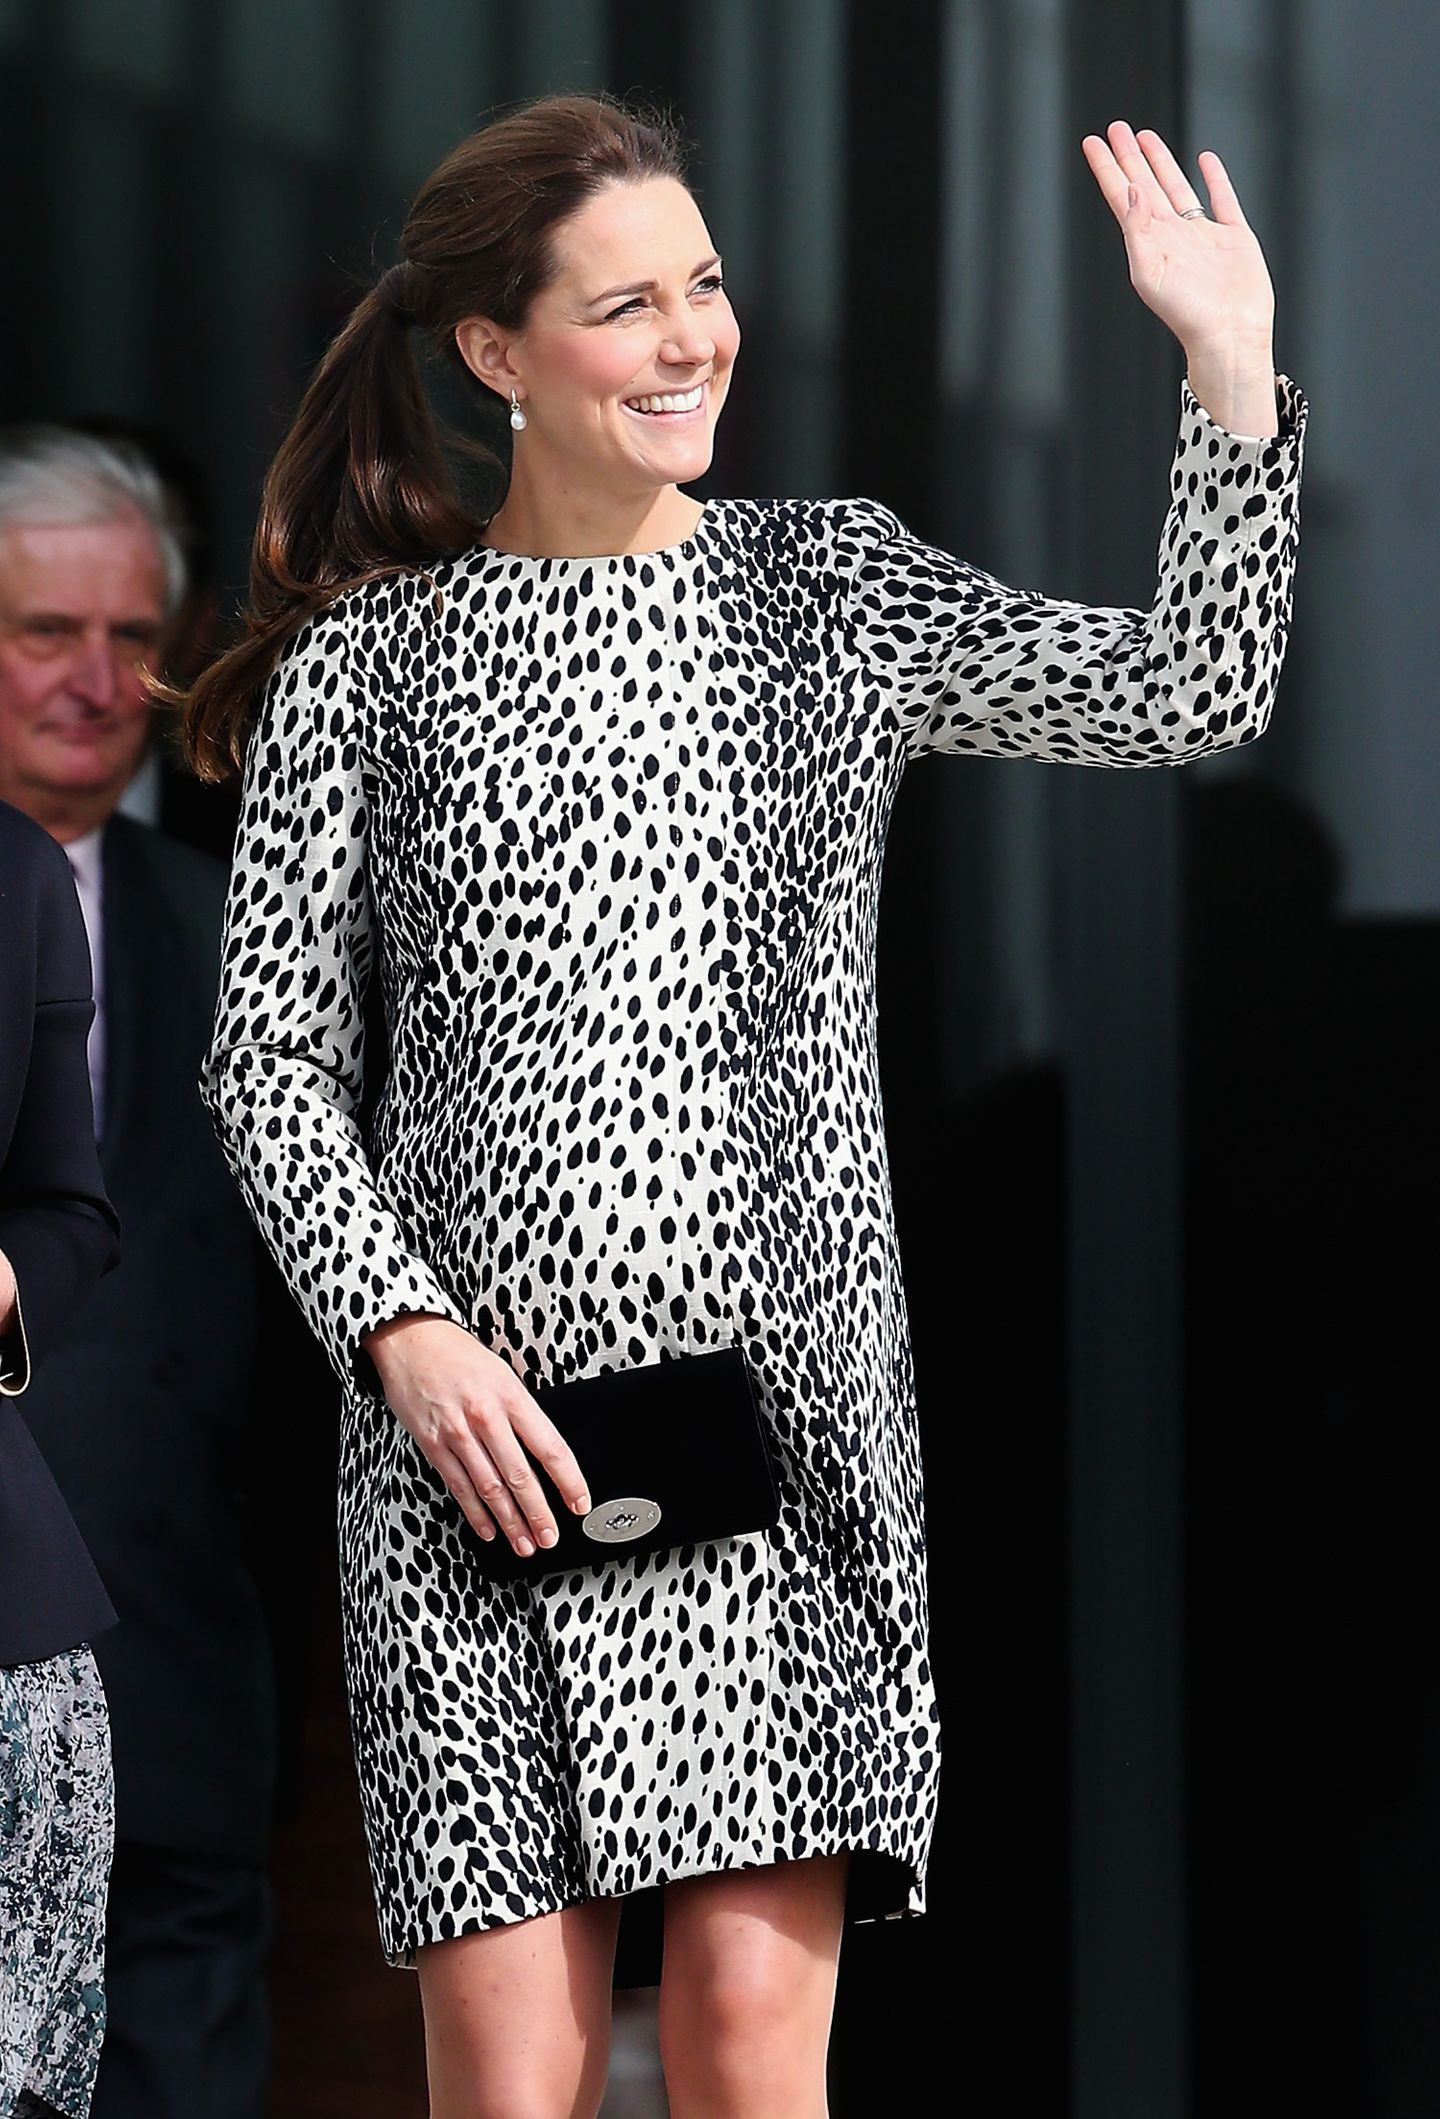 Da war sie noch im 7. Monat schwanger: Kate Middleton bei einem öffentlichen Termin im Dalmatiner-Kleid des Labels 'Hobbs'. Zwar stand ihr das Kleid sehr gut, dennoch wurde der Look noch wochenlang als "ungewöhnlich" und "riskant" betitelt. Zum ersten Mal trug sie den schönen Stoff allerdings nicht - bereits in ihrer ersten Schwangerschaft, konnte man das Kleid zur Schiffstaufe der "Royal Princess" begutachten.